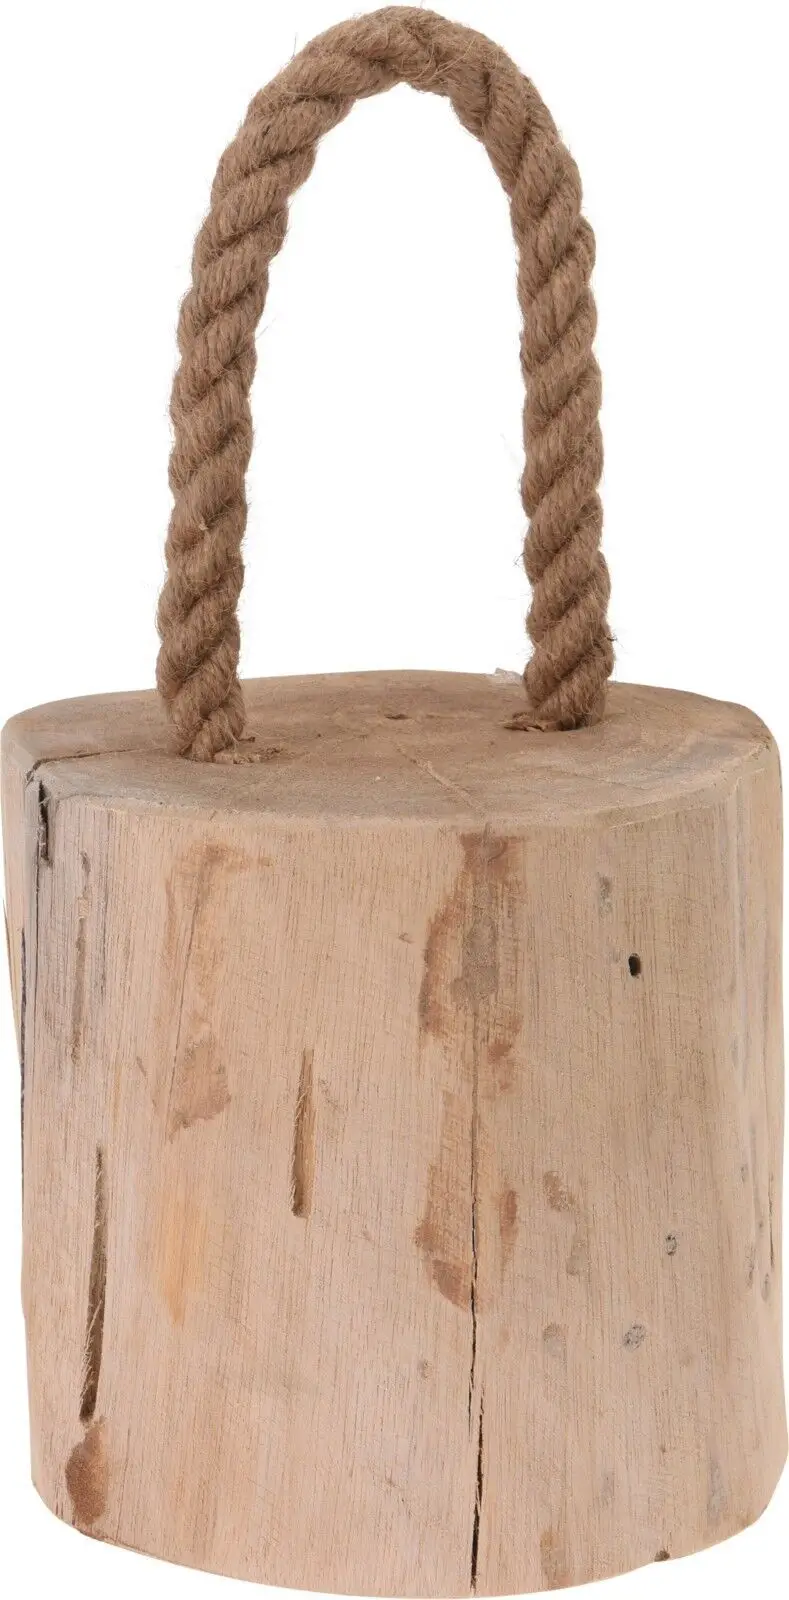 1,4 Maritim kg T眉rstopper Holz Rustikal